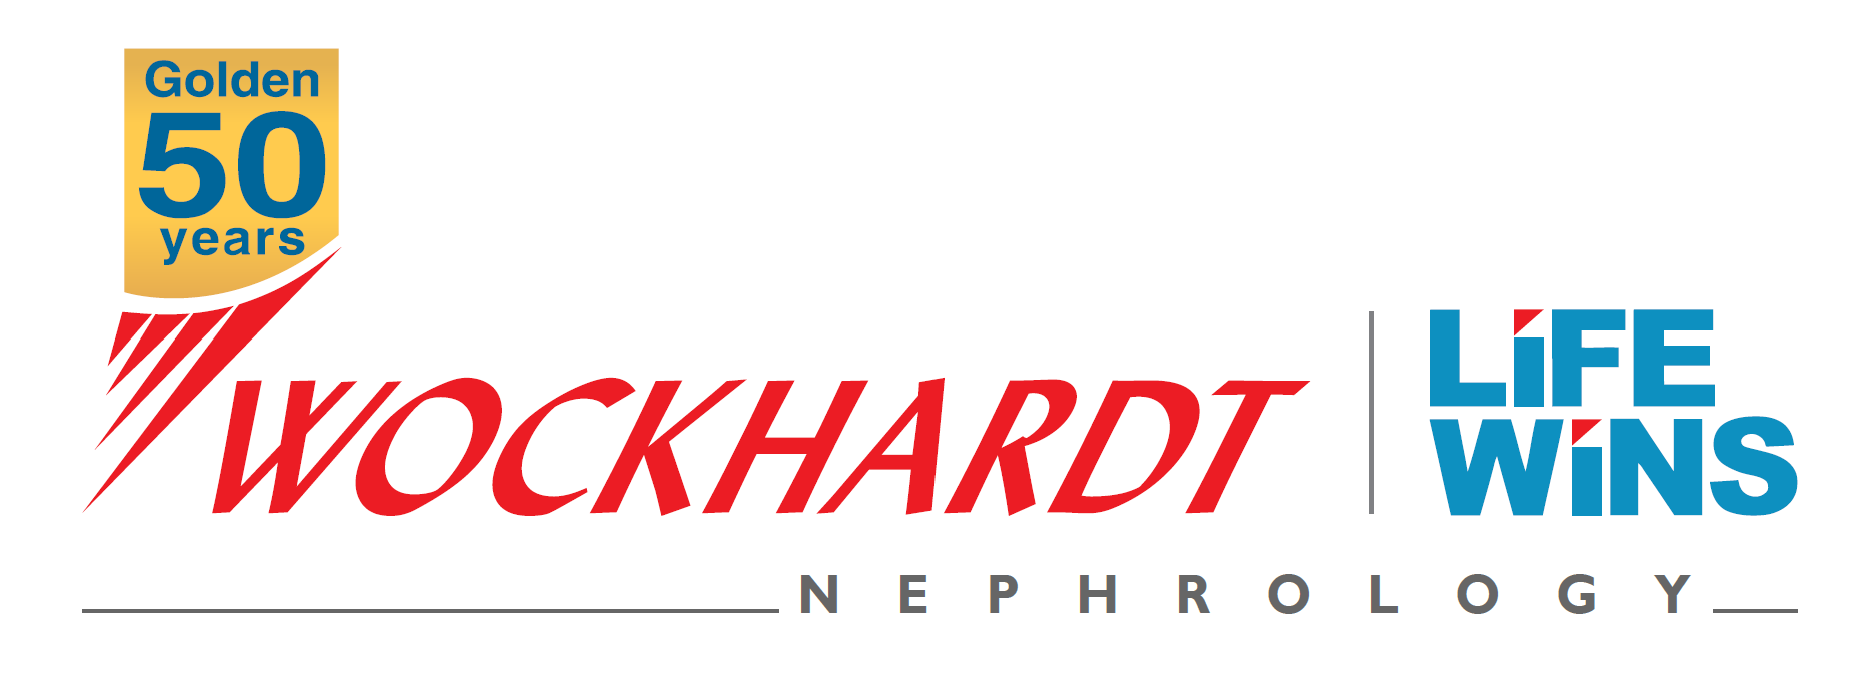 wockhardt nephrology logo